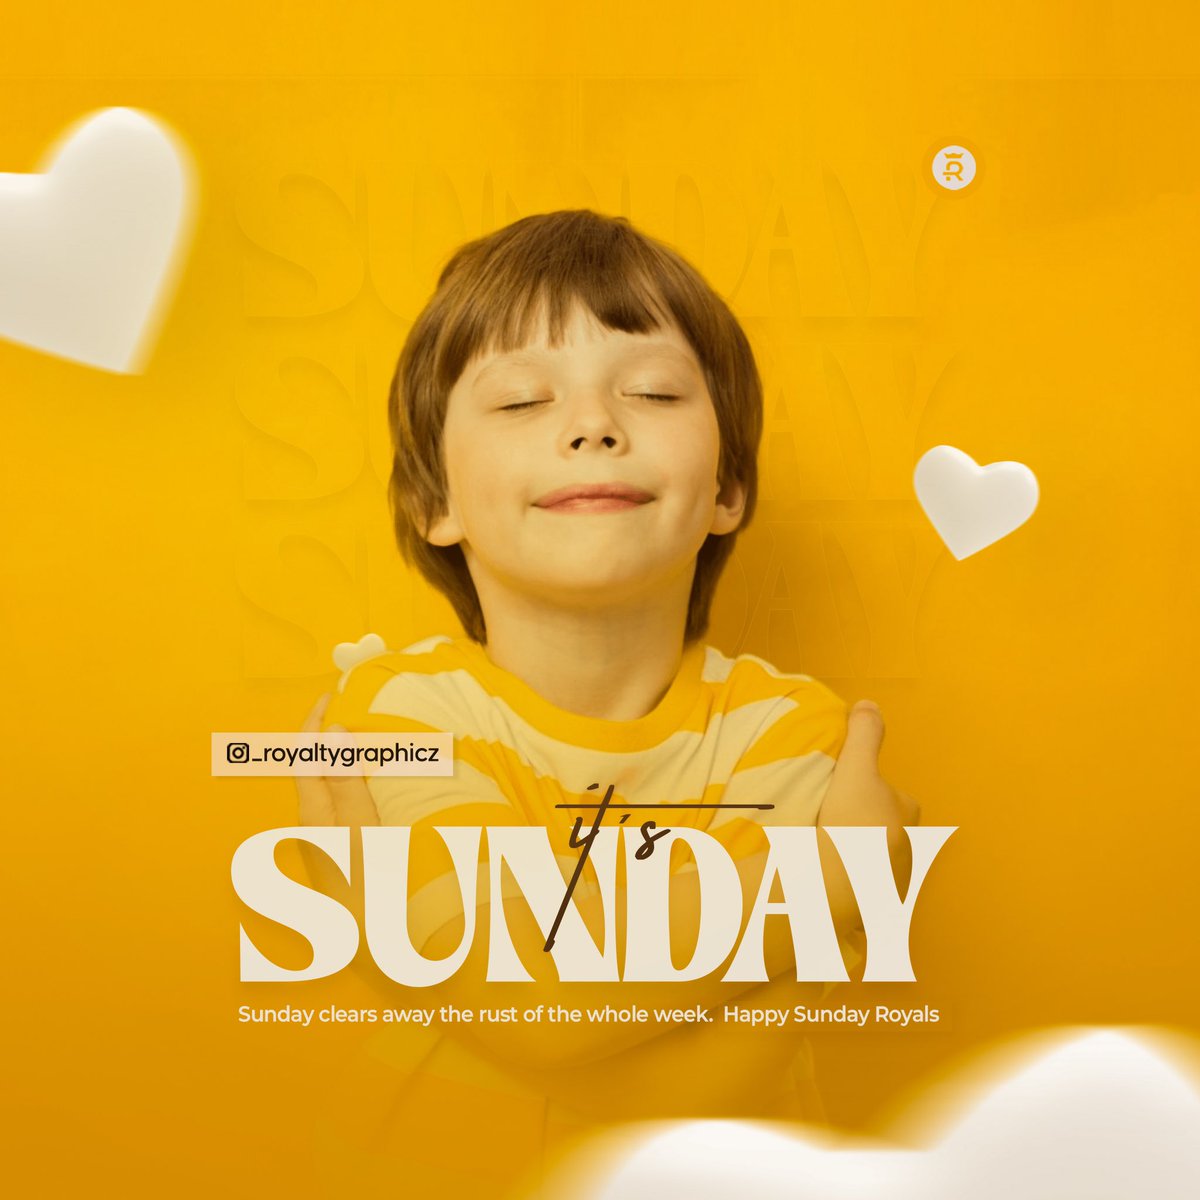 Sunday clears away the rust of the whole week. Happy Sunday Royals ⚜️☀️

#sundayfunday #sundayvibes #sundaymood #sundaystyle